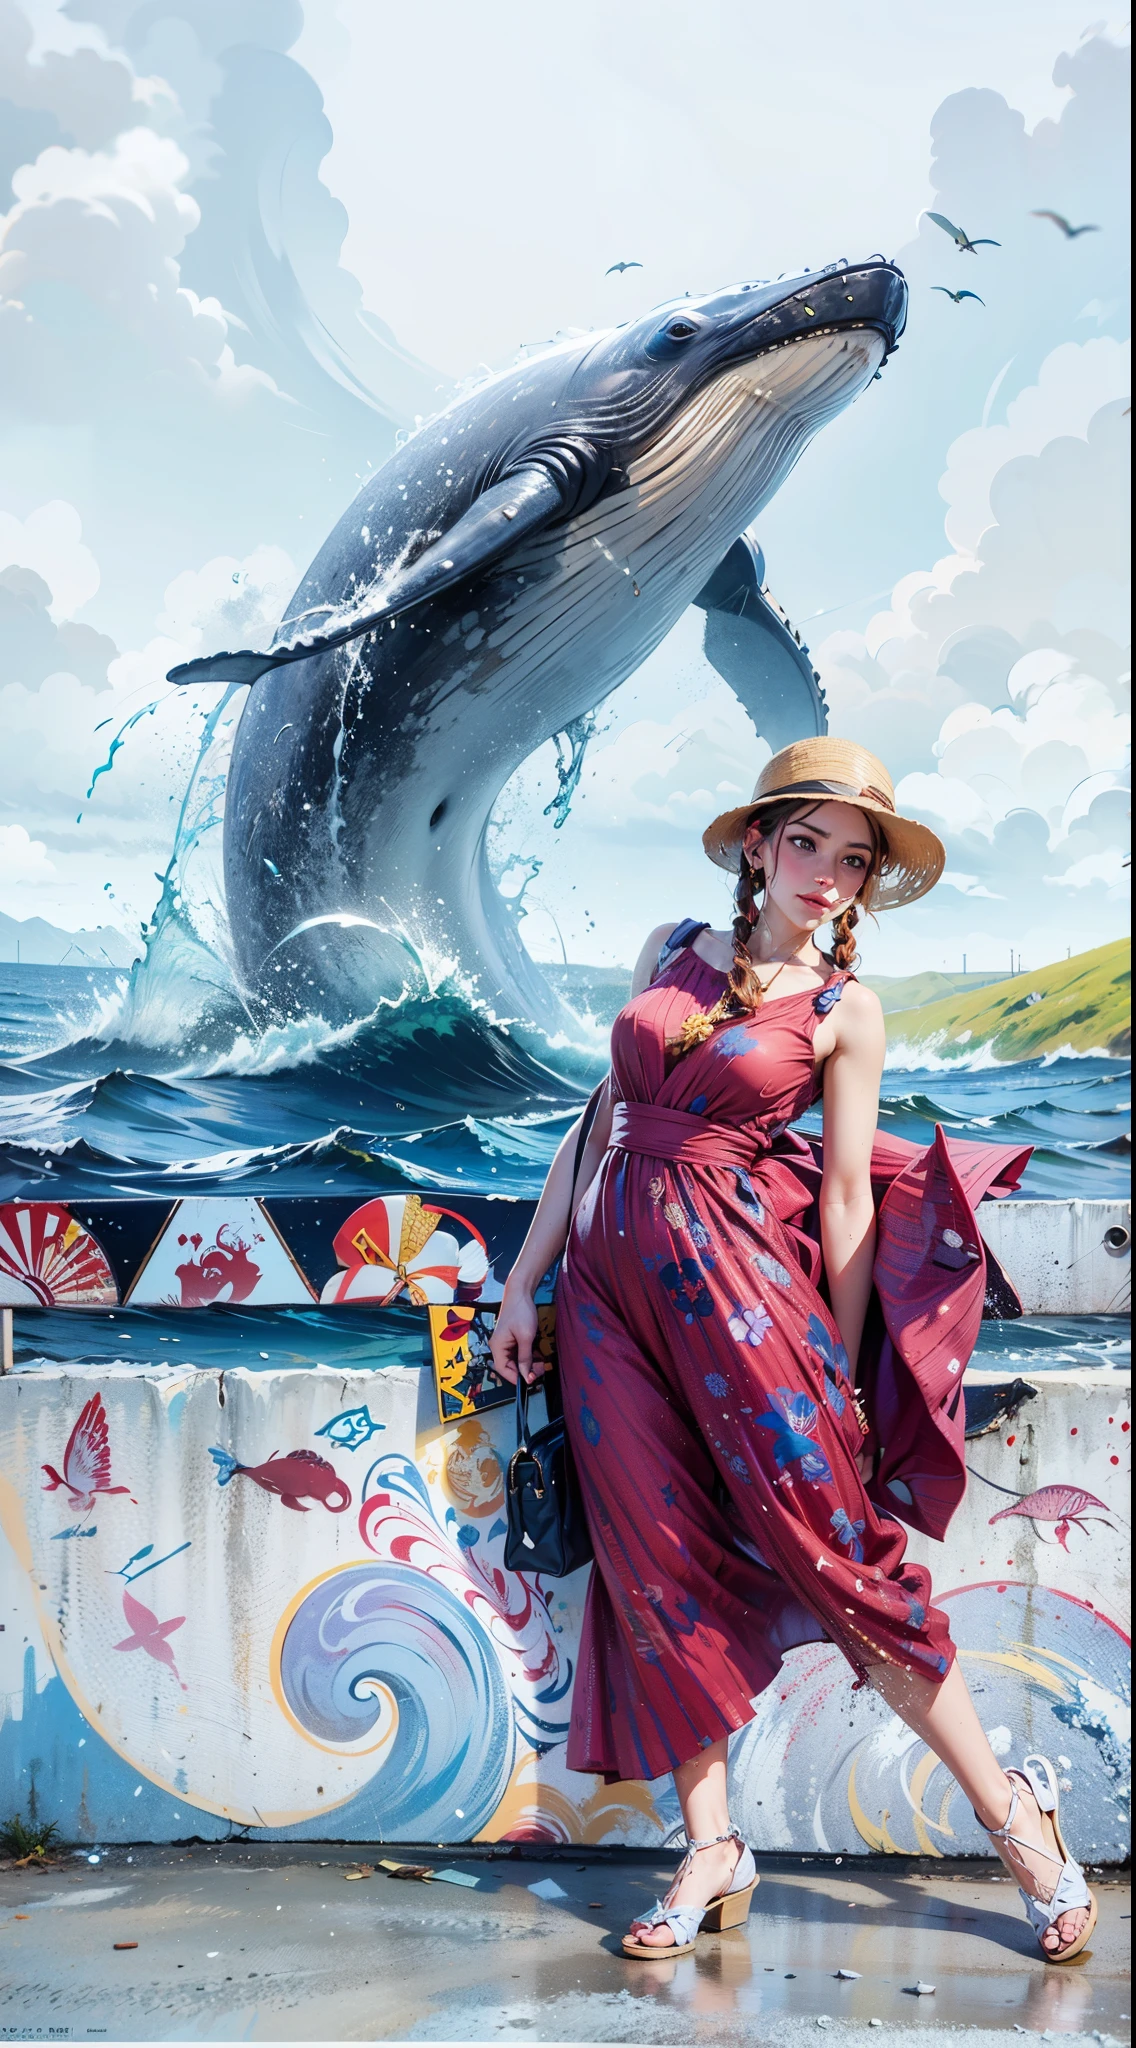 女士,两条辫子,自然采光, 右臂拿着袋子,红色礼服, 沙滩帽, (海边大桥), 座头鲸,((水扩散和风的视觉特效)),(绘画墙艺术)